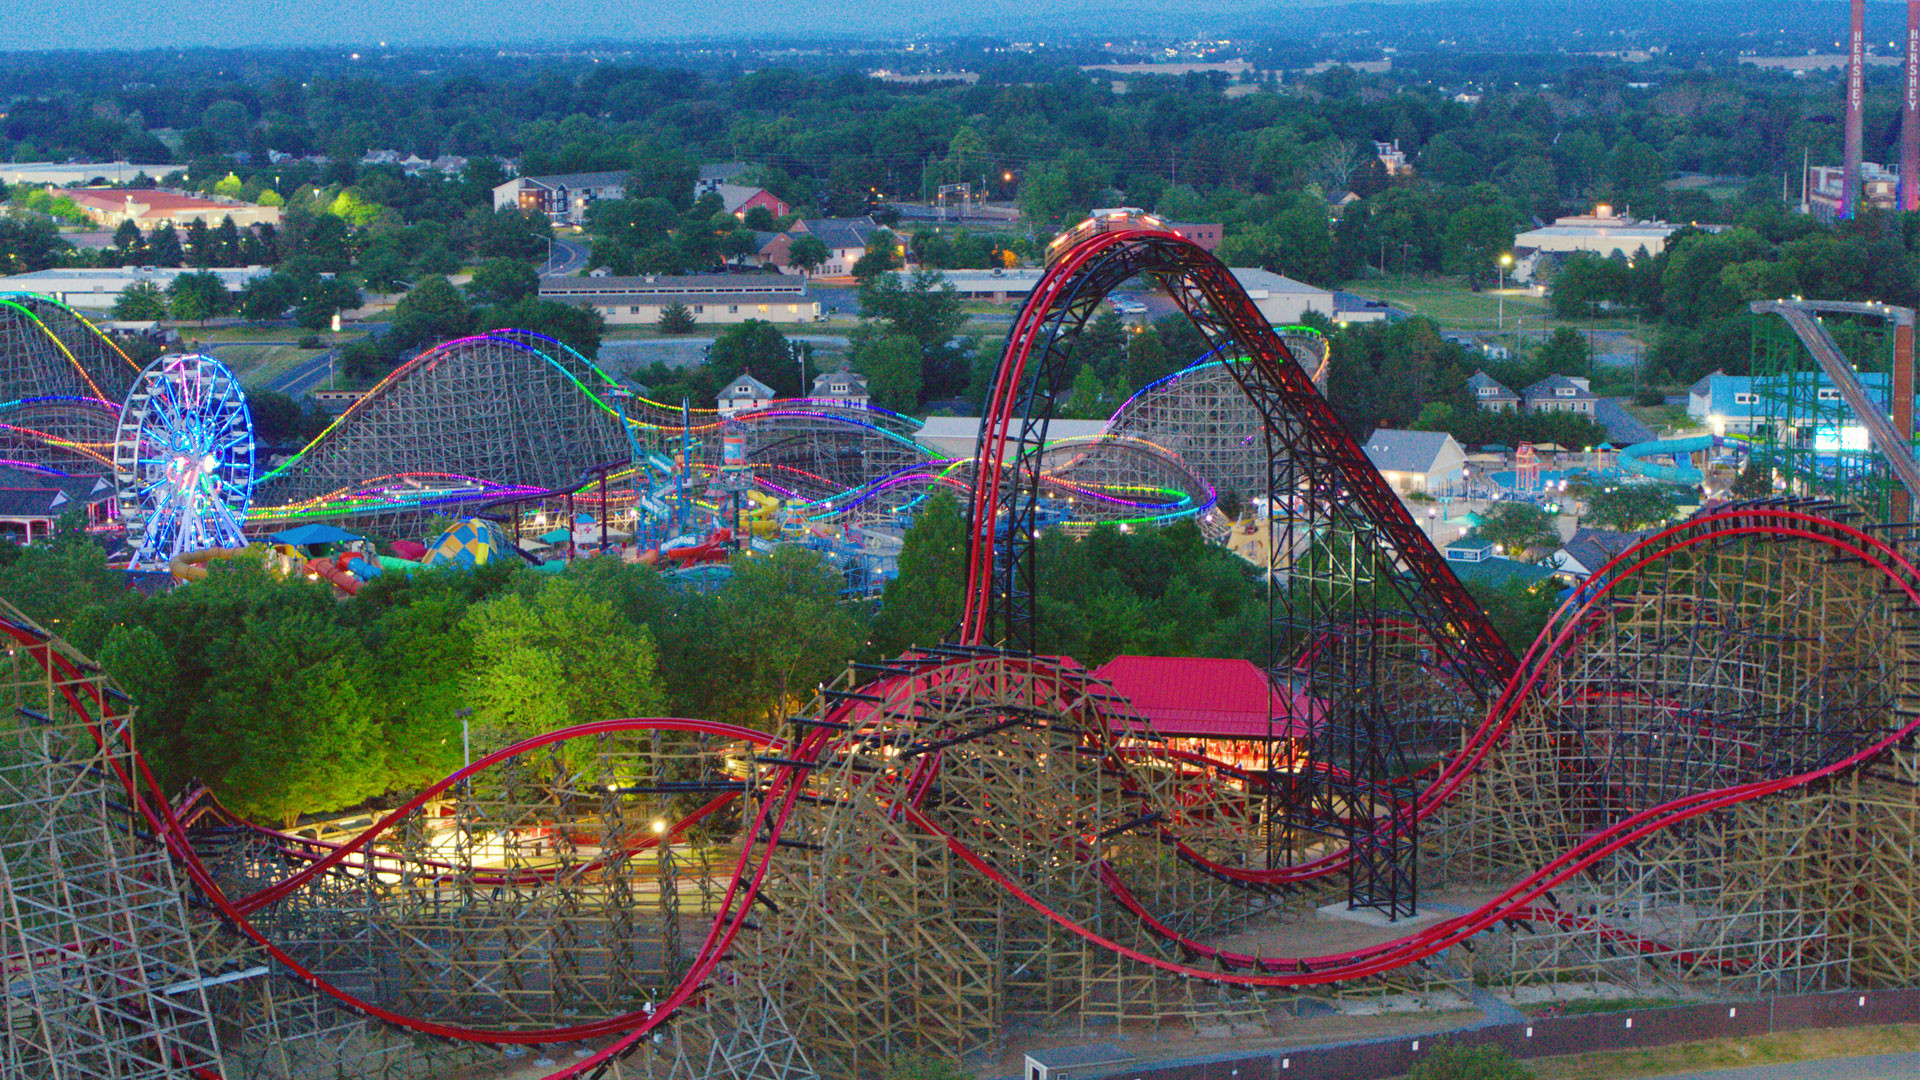 Hersheypark’s Wildcat’s Revenge Honored as Best New Roller Coaster